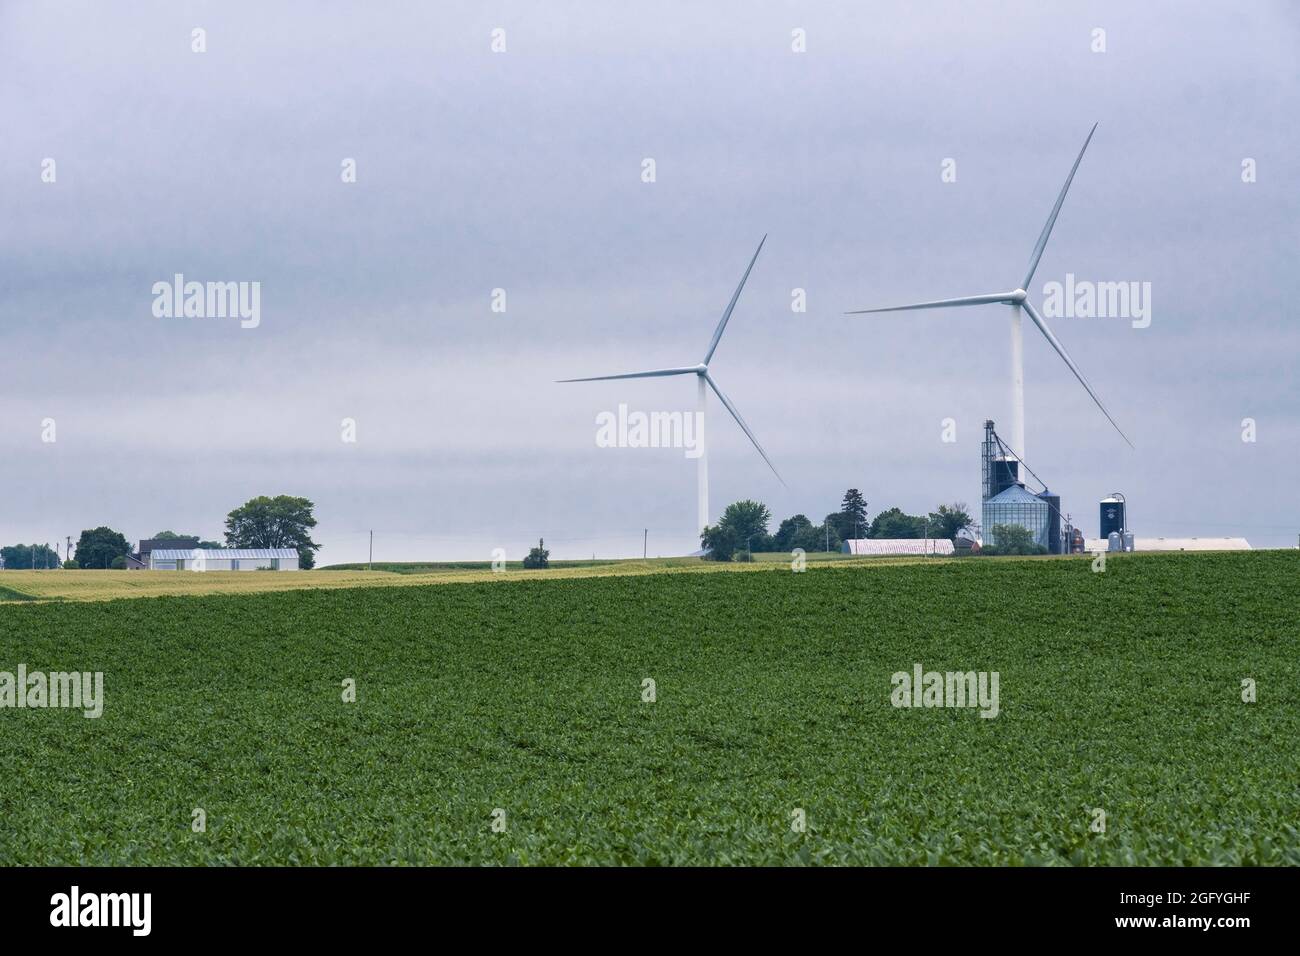 Près de Earlville, Iowa. Moulins à vent et bacs de stockage de grain. Fèves de soja au premier plan. Banque D'Images